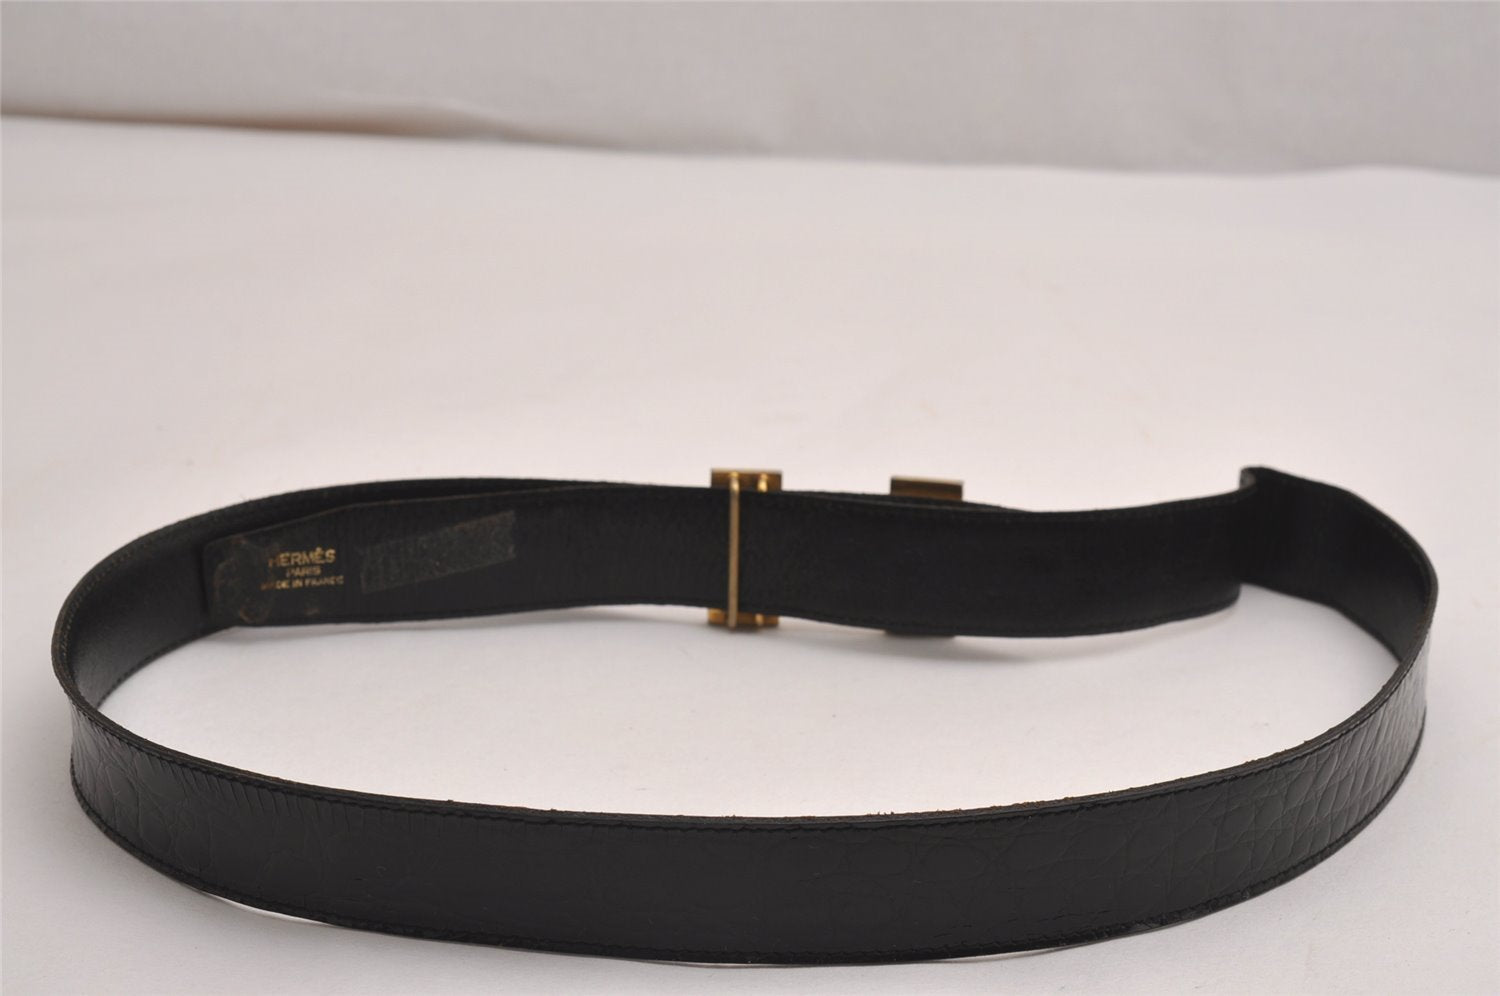 Authentic HERMES Constance Enamel Leather Belt Size 95cm 37.4